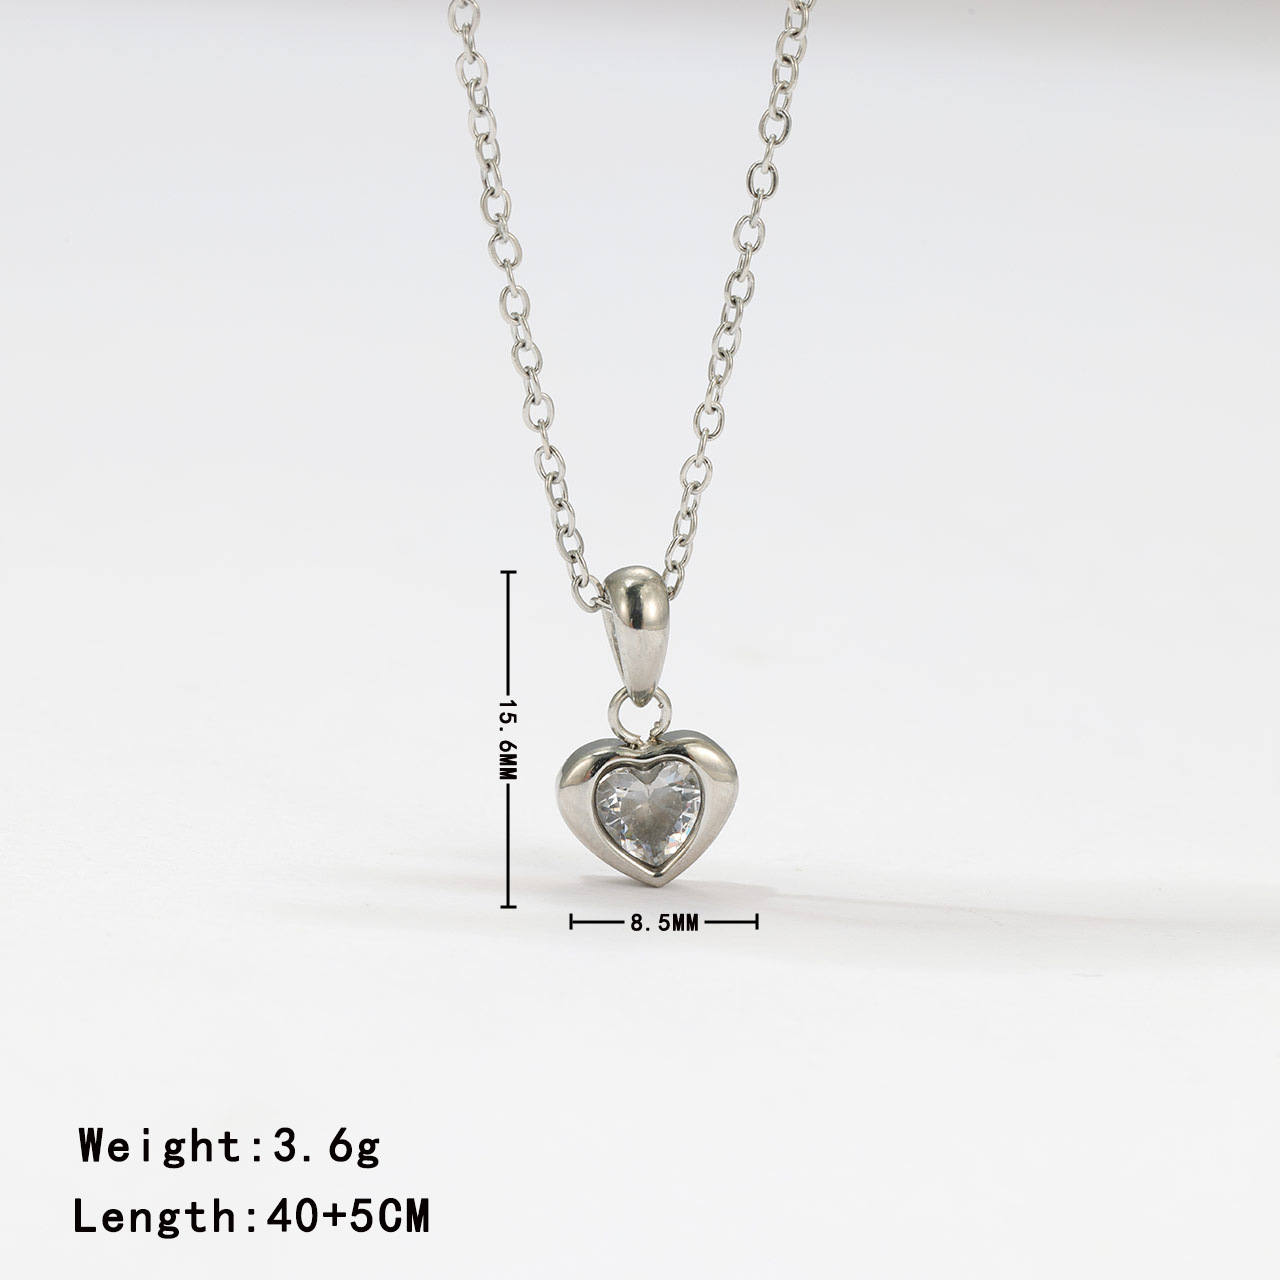 7:Necklace - Platinum colour clear zircon